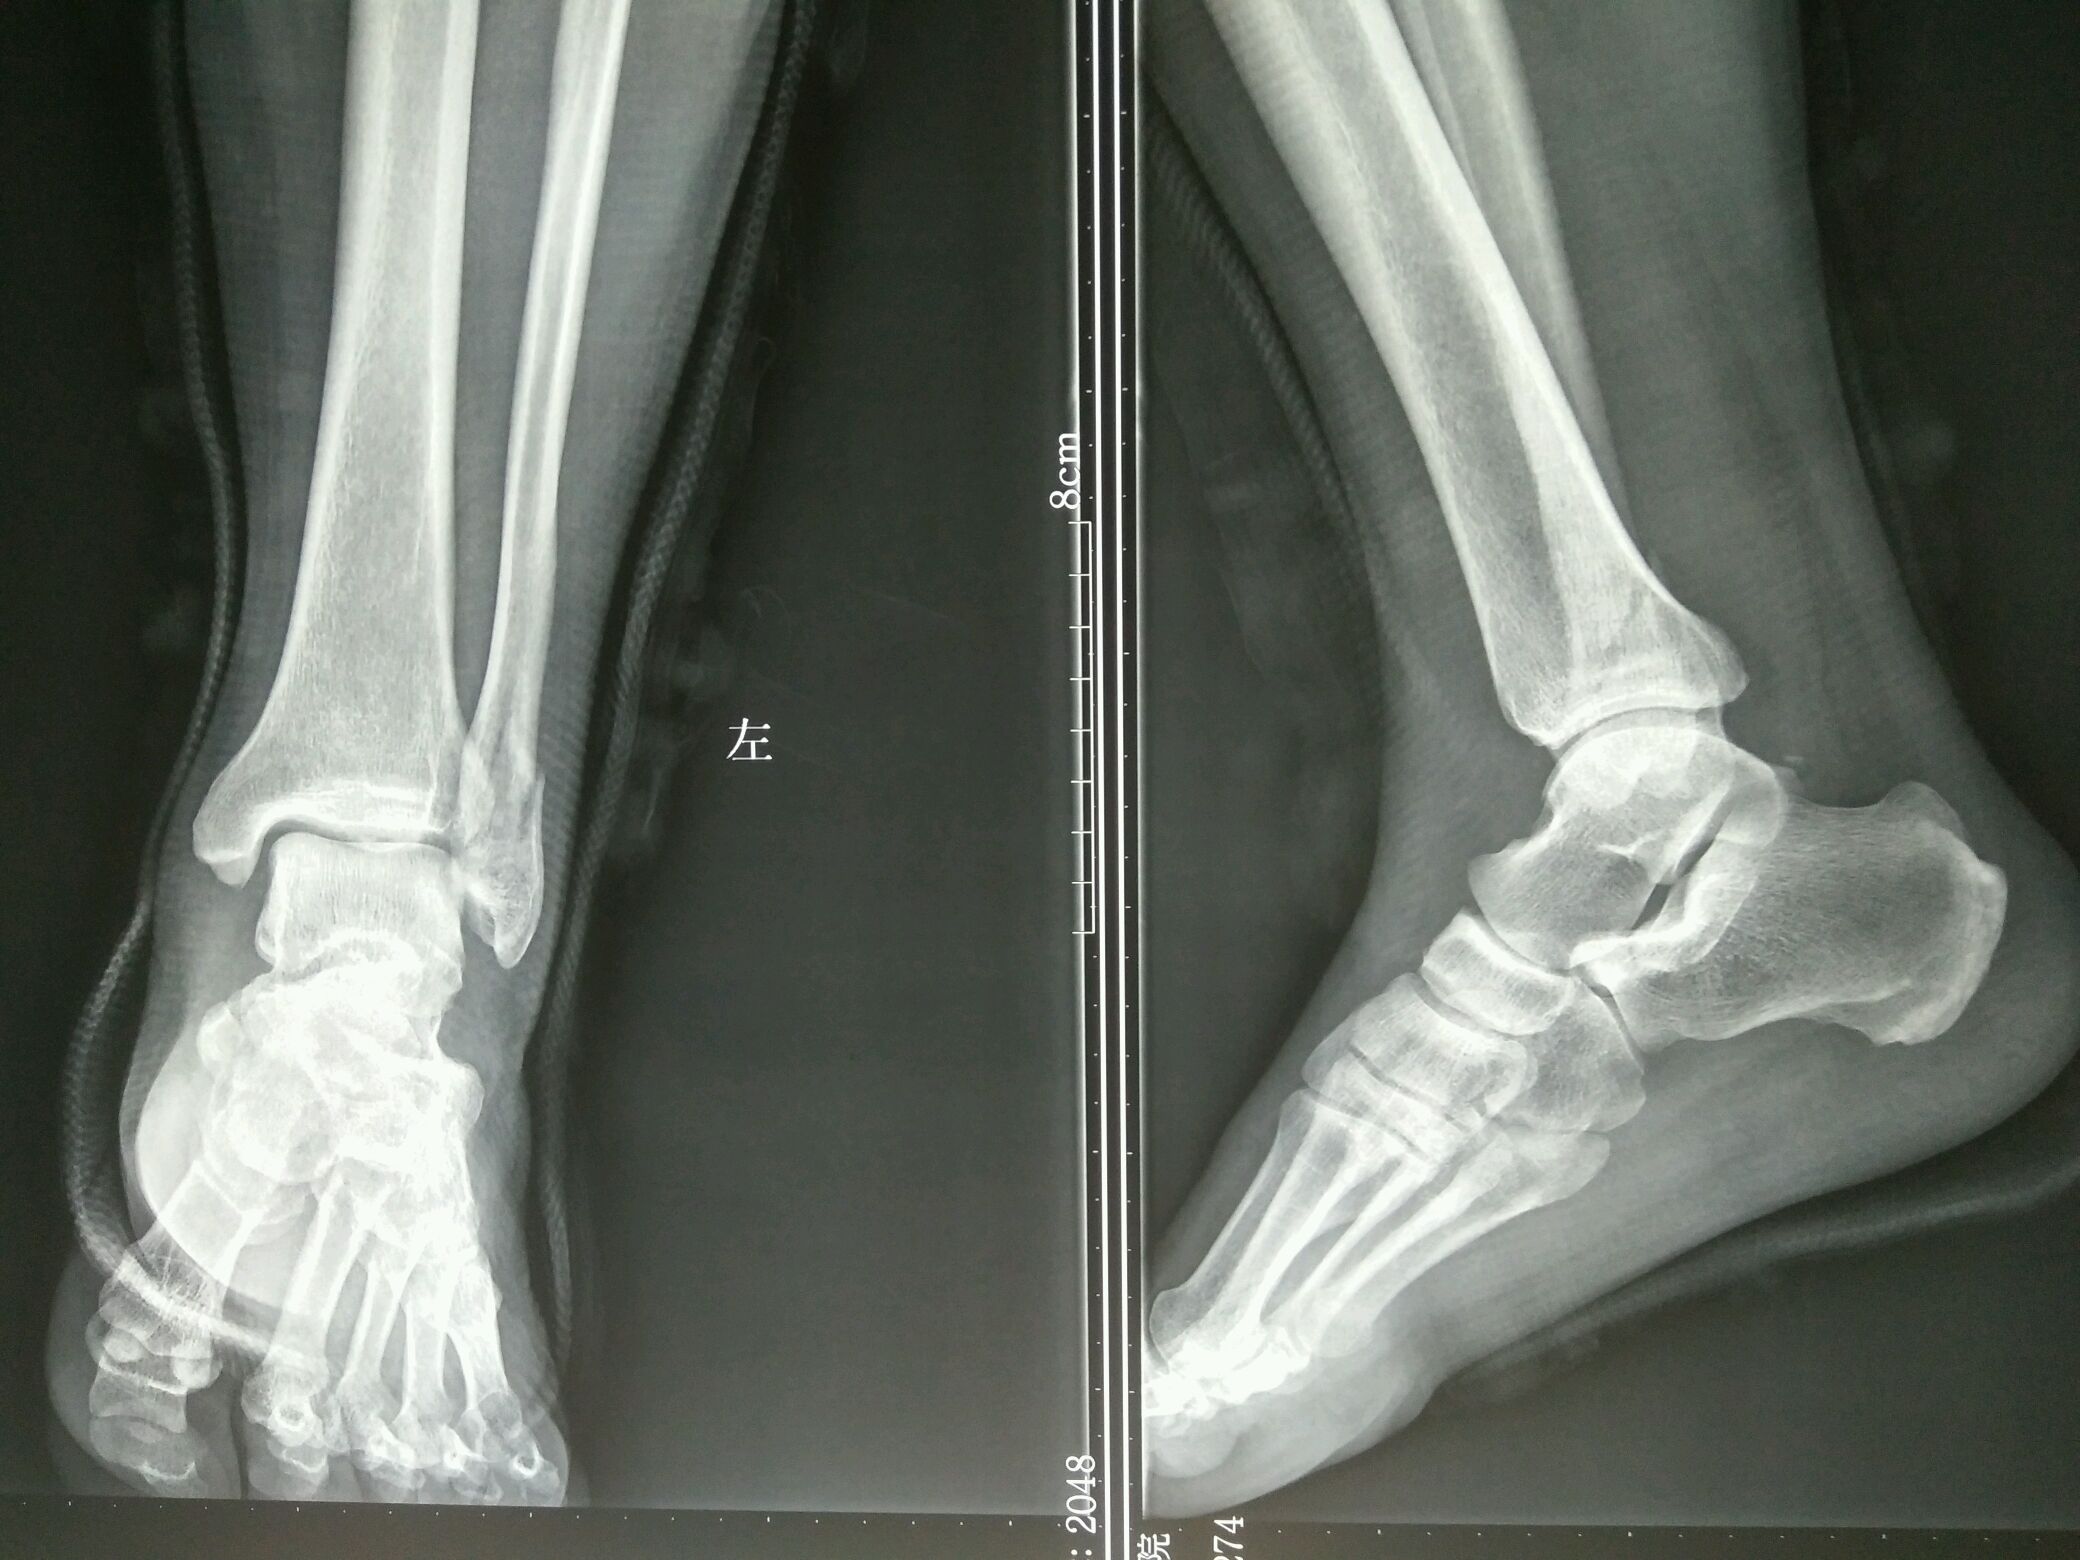 十天后病人再次来我院复查x线片如下复位后踝关节脱位得以纠正,但外踝